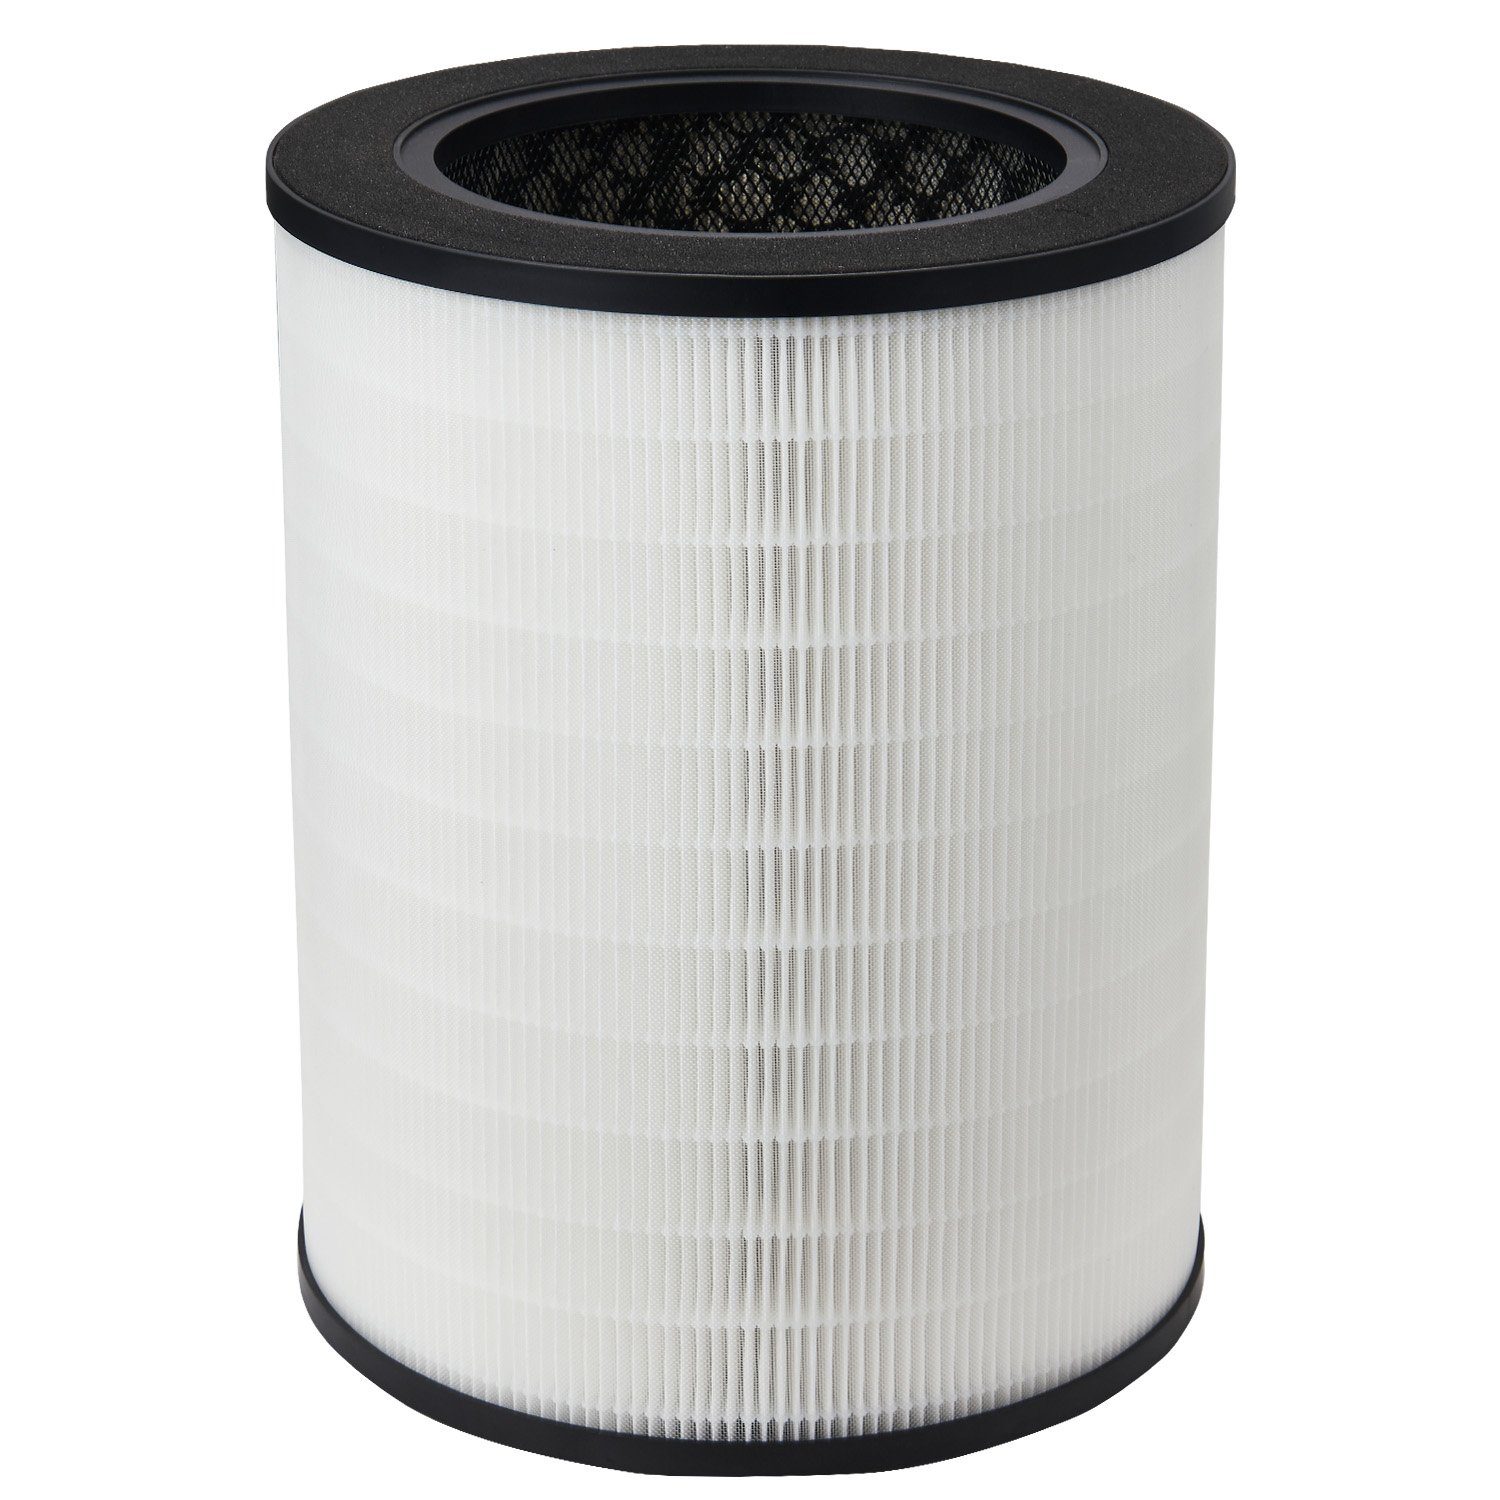 djive HEPA-Filter H14, Zubehör für djive Professional PURE 800, filtert <99,5% der Feinstaubpartikel, Pollen uvm. aus der Luft